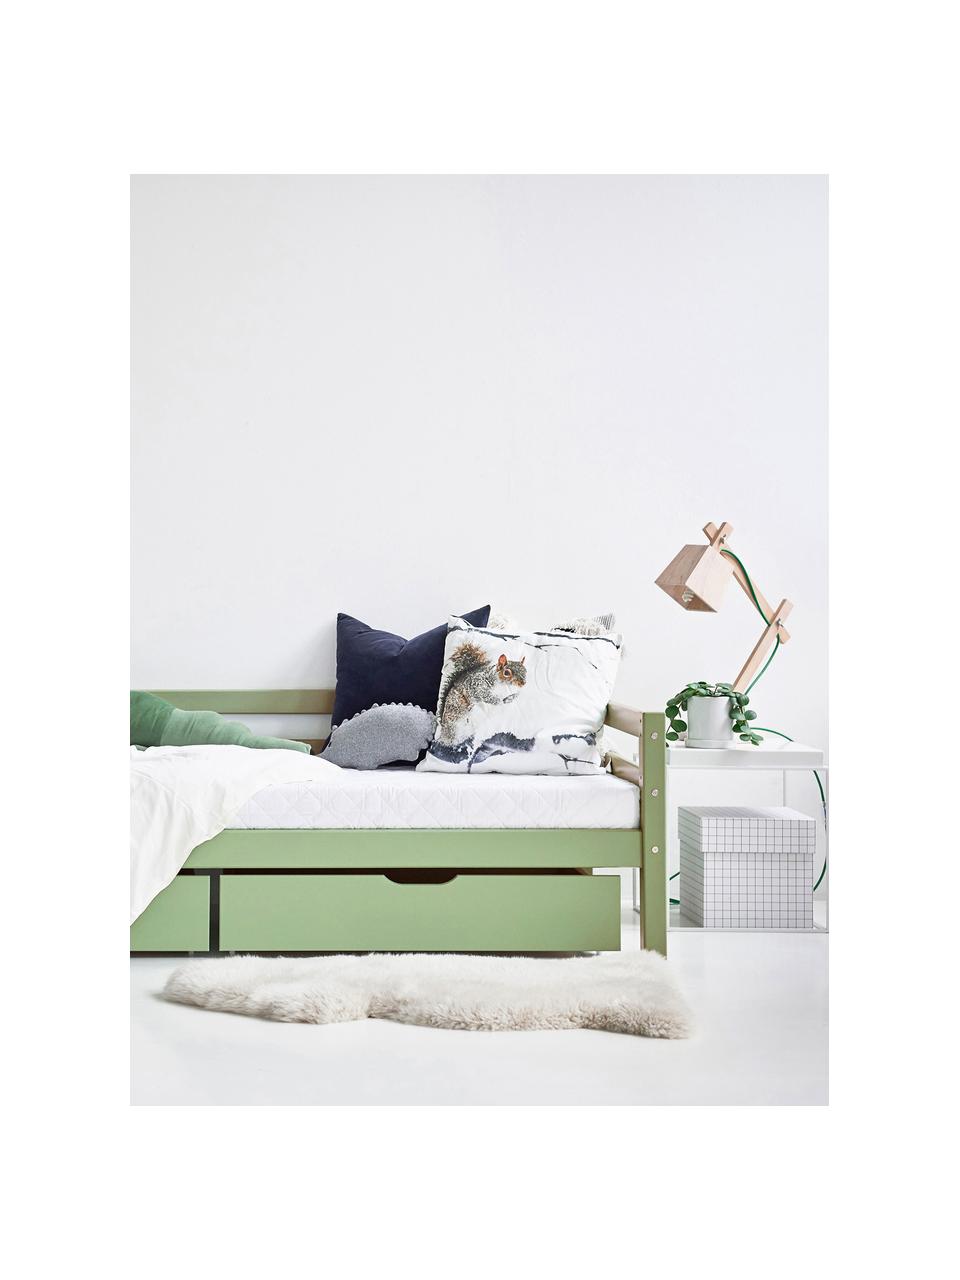 Kinderbett Eco Dream aus Kiefernholz, 90 x 200 cm, Massives Kiefernholz, FSC-zertifiziert, Schichtholz, Kiefernholz, salbeigrün lackiert, B 90 x L 200 cm